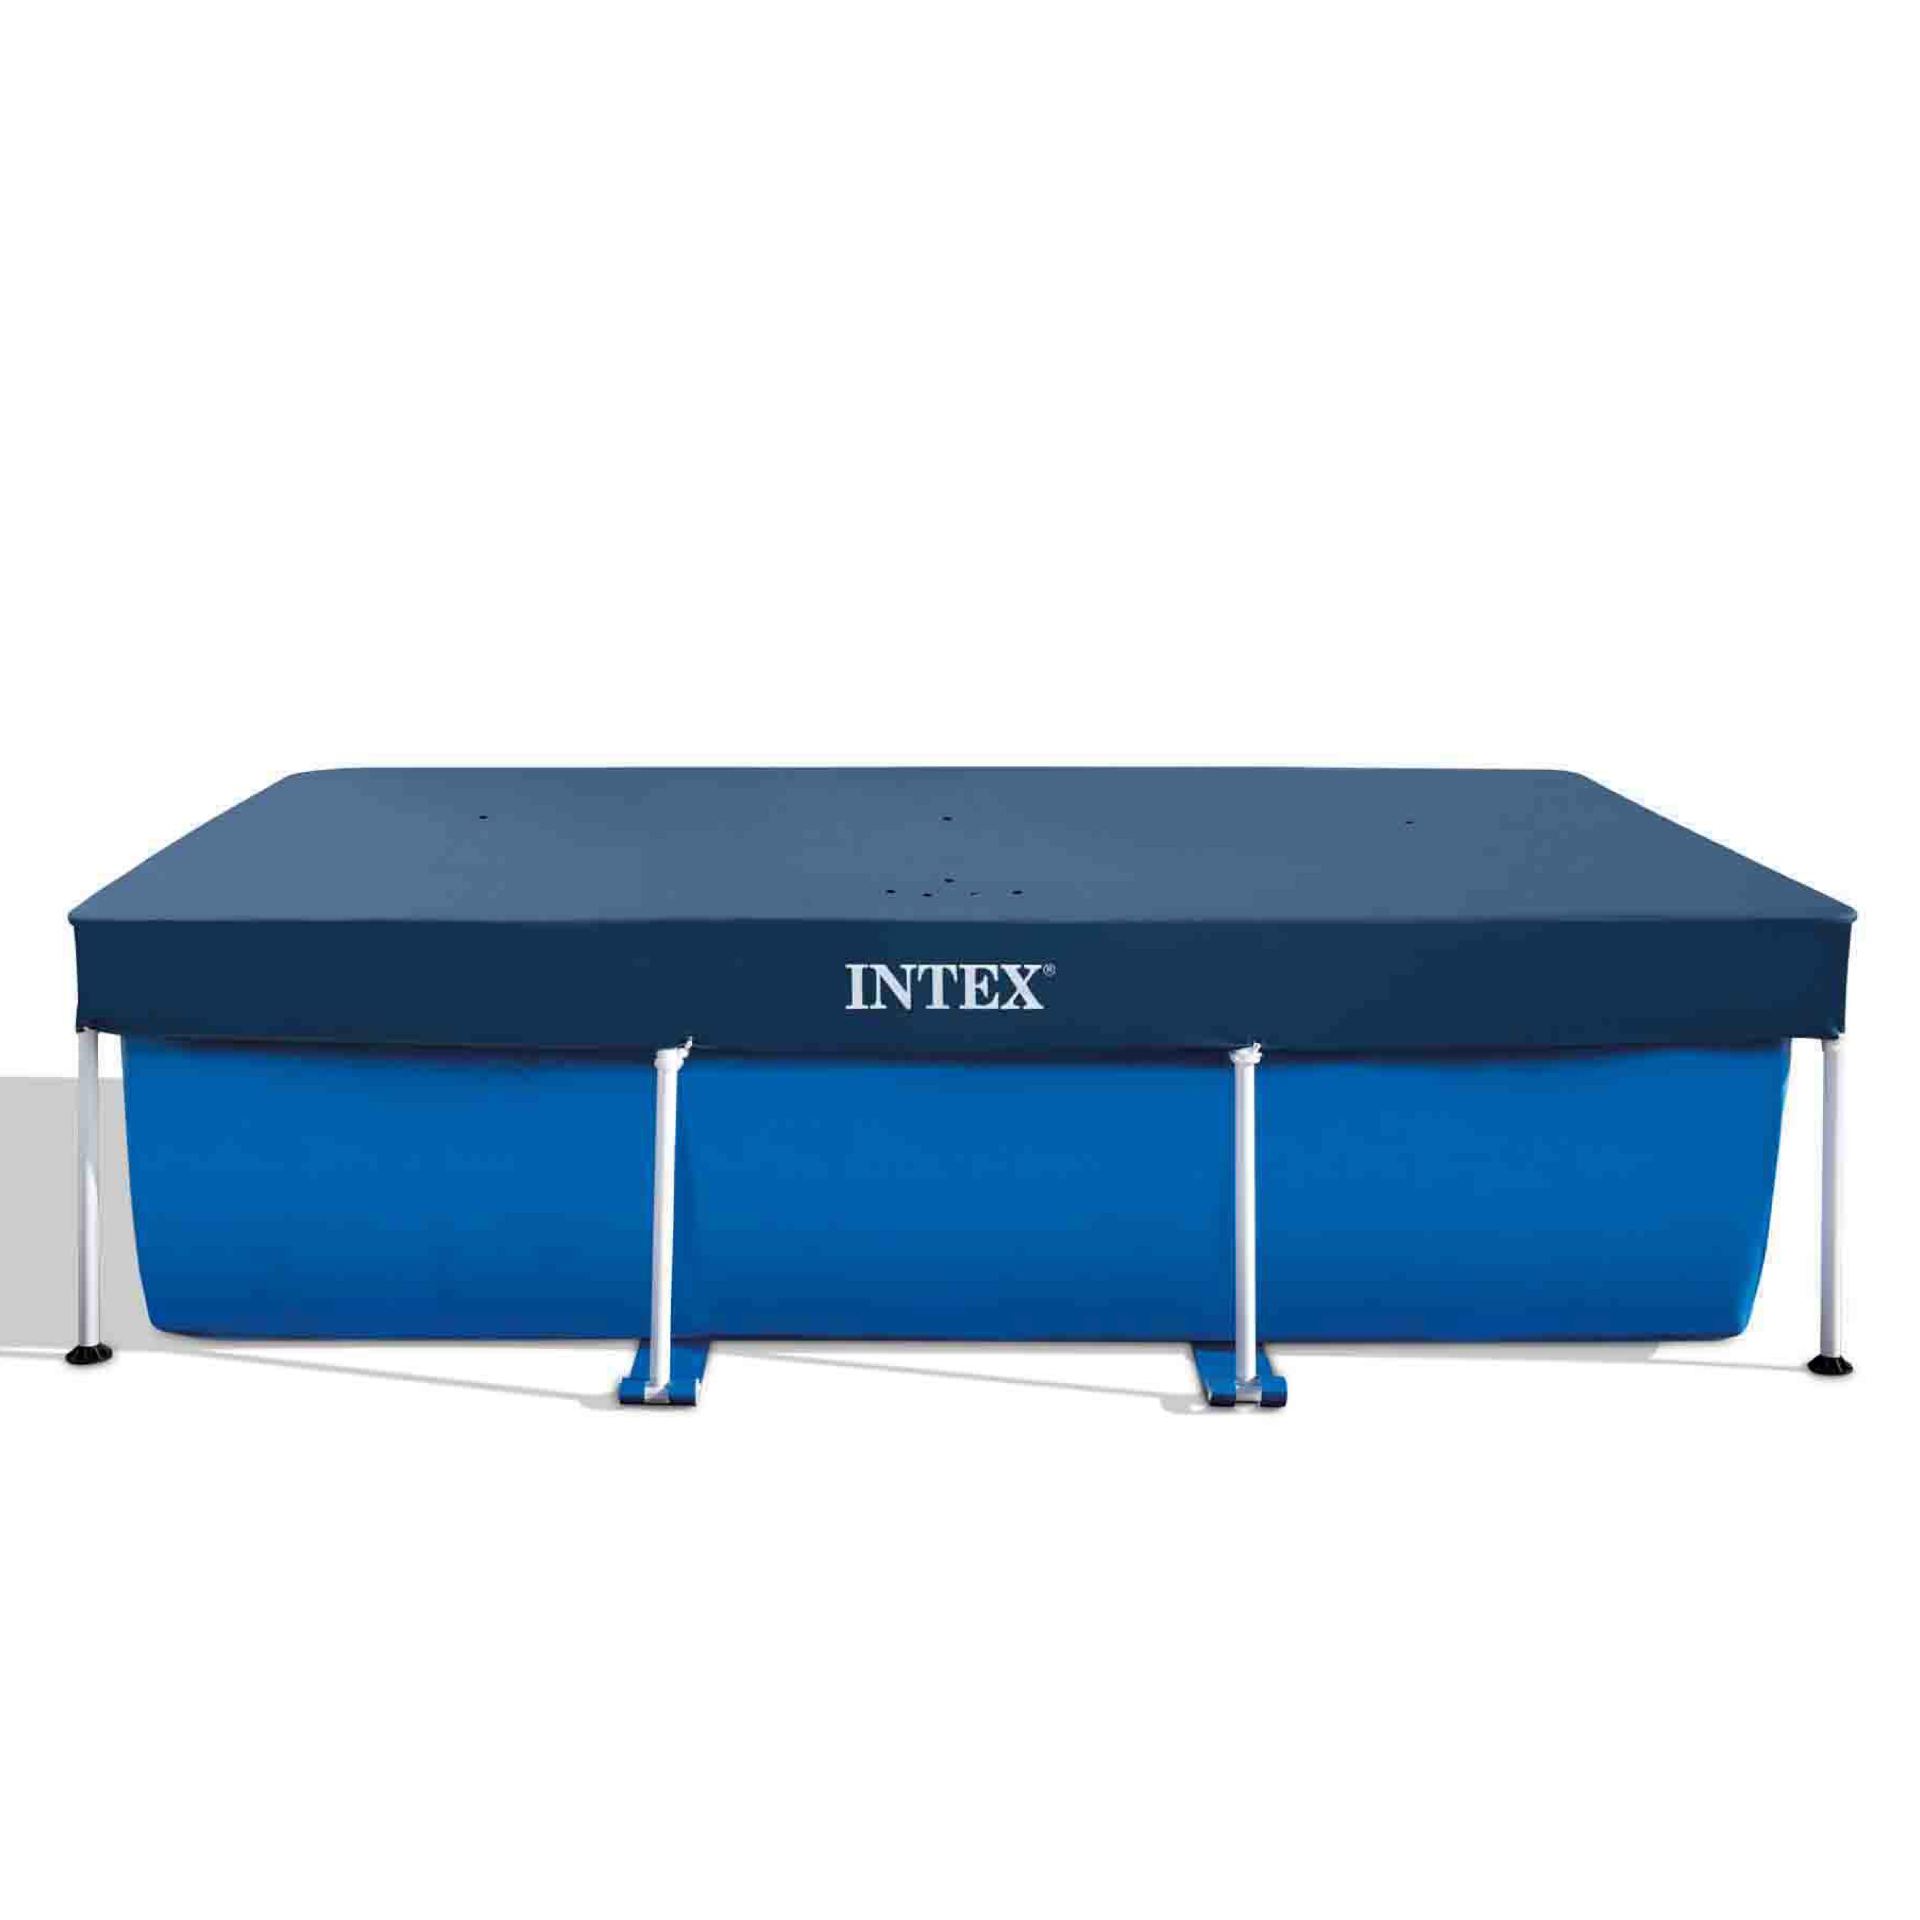 Intex rectangular pool cover 300cm x 200cm